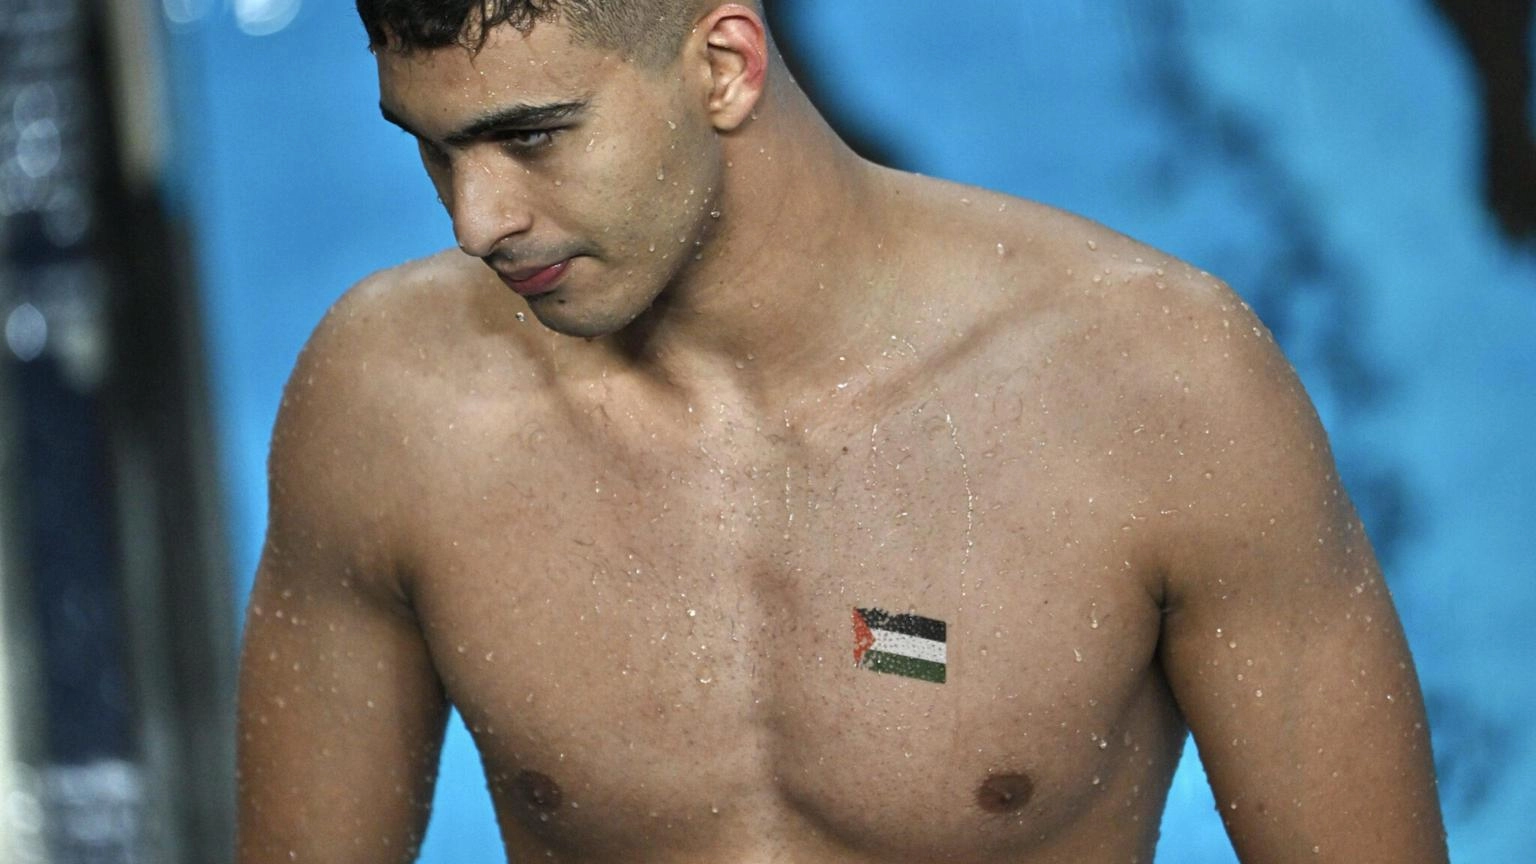 Parigi:Nuotatore Palestina,parenti e amici uccisi ma io sono qui